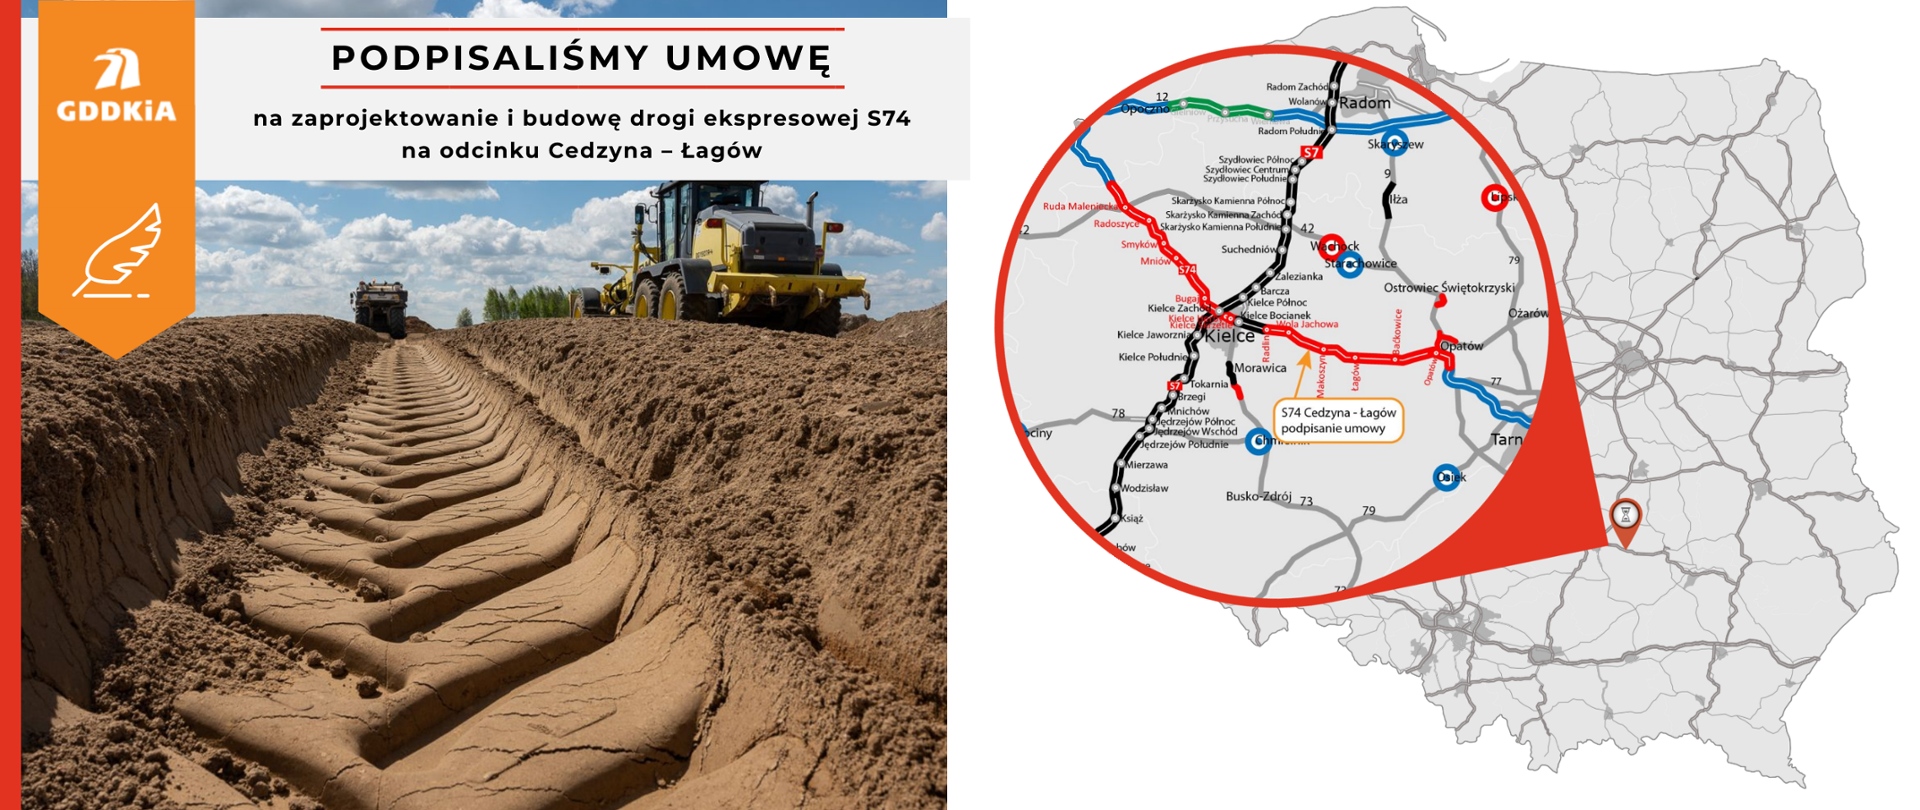 S74 Cedzyna - Łagów - infografika z mapą z zaznaczonym odcinkiem i zdjęcie robót ziemnych na budowie 